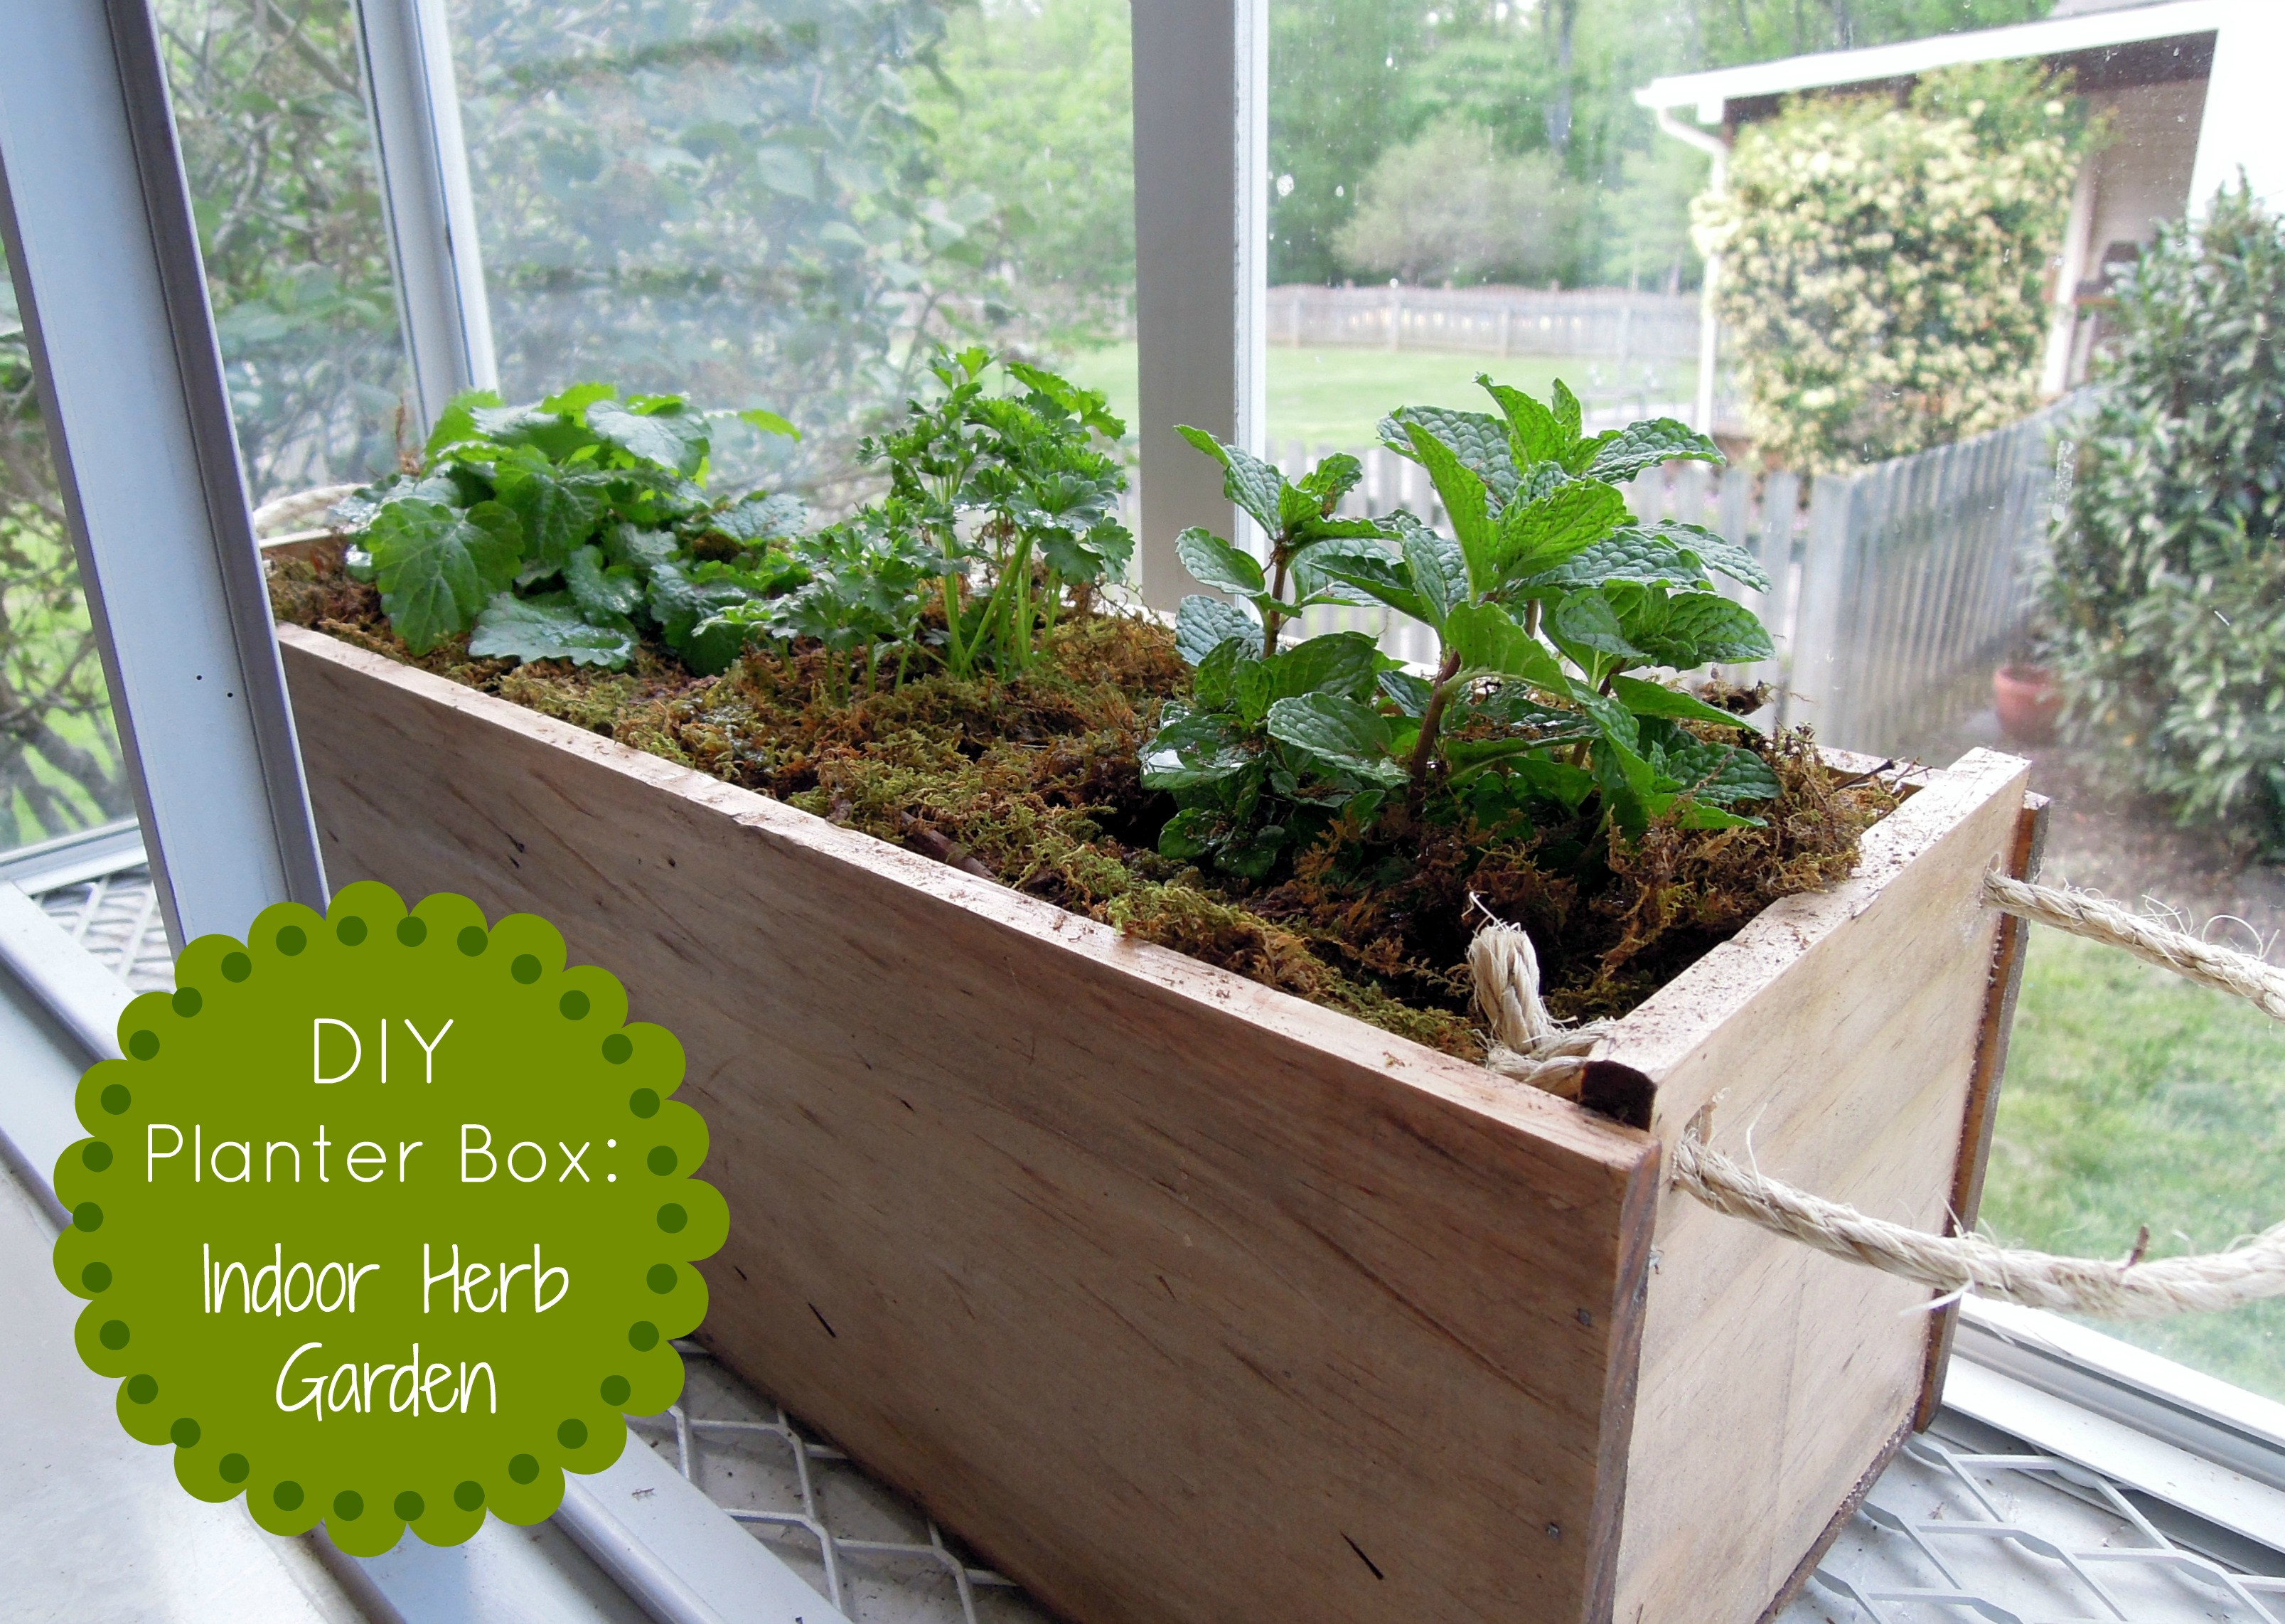 Best ideas about DIY Herb Garden Box
. Save or Pin DIY Herb Garden Planter Box Now.